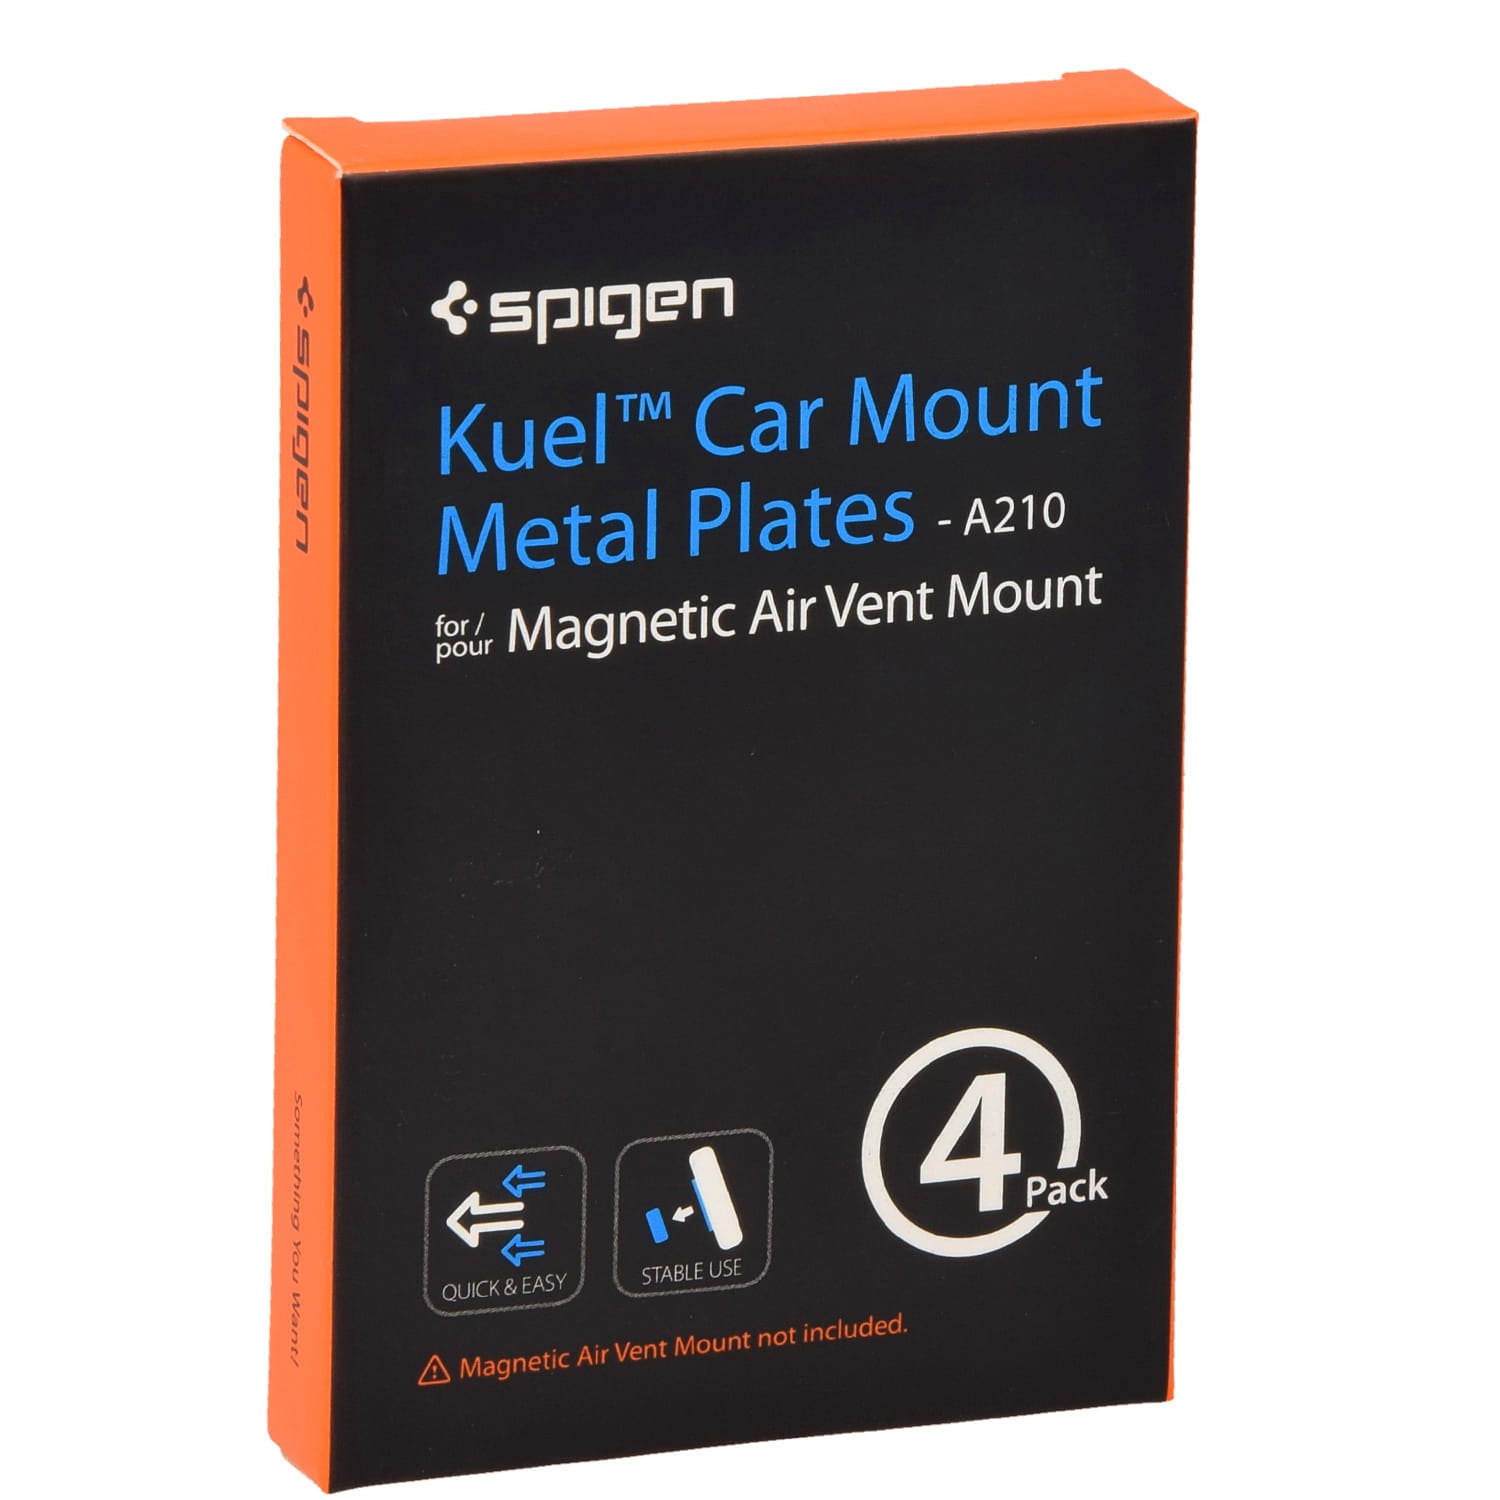 Metallplatten für Griffe Spigen Kuel Car Mount Metal Plates A210 schwarz